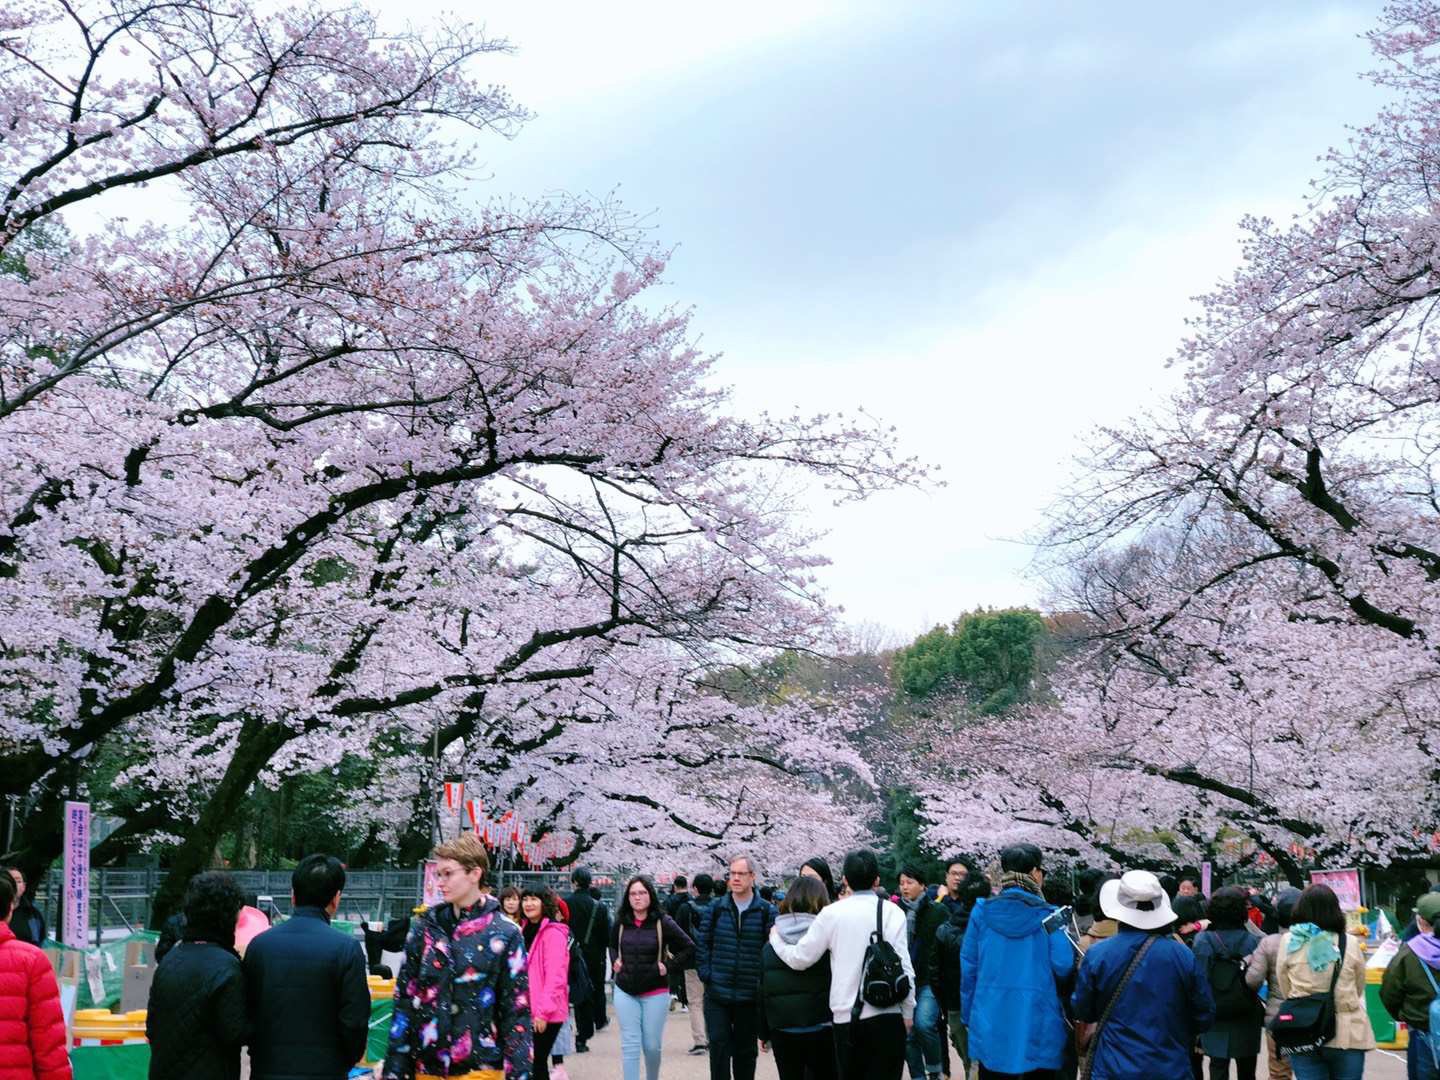 東京で人気の公園 トップ 10 - 都会にいながら癒しを感じられる名園巡り - Go Guides